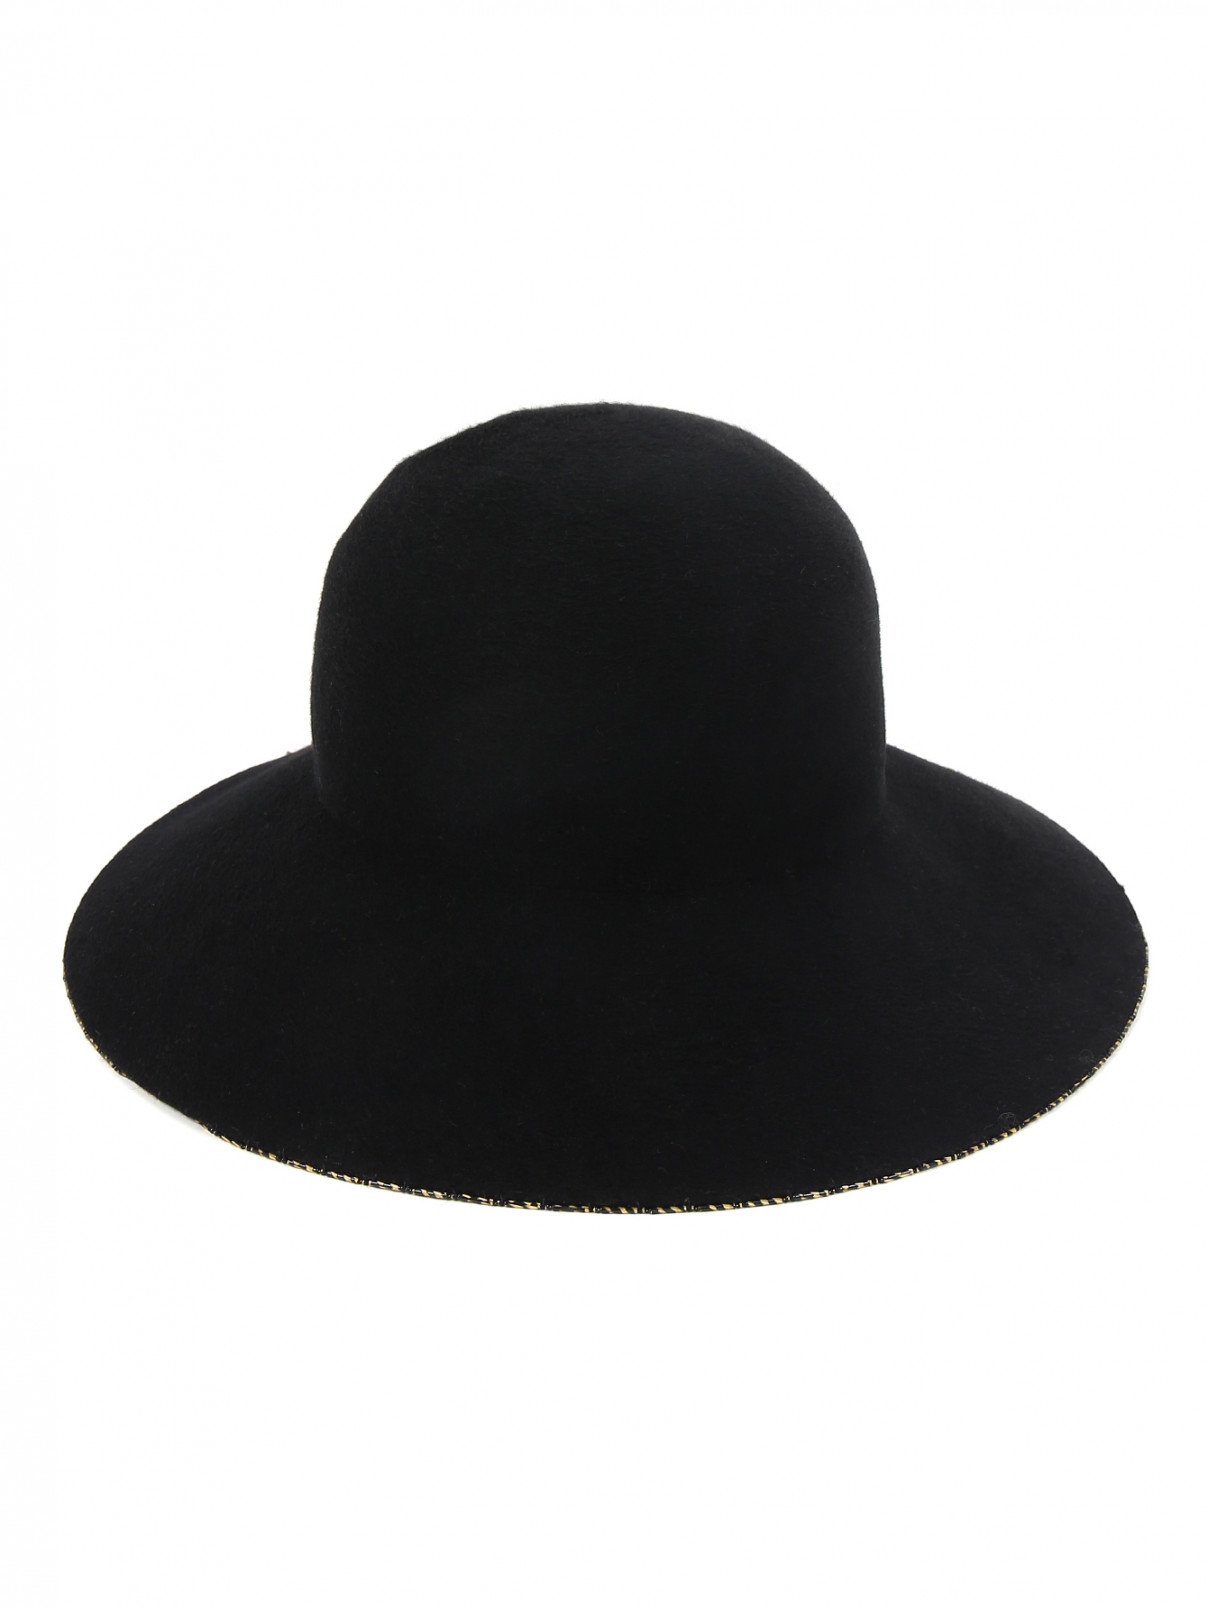 Шляпа из шерсти Eugenia Kim  –  Обтравка1  – Цвет:  Черный